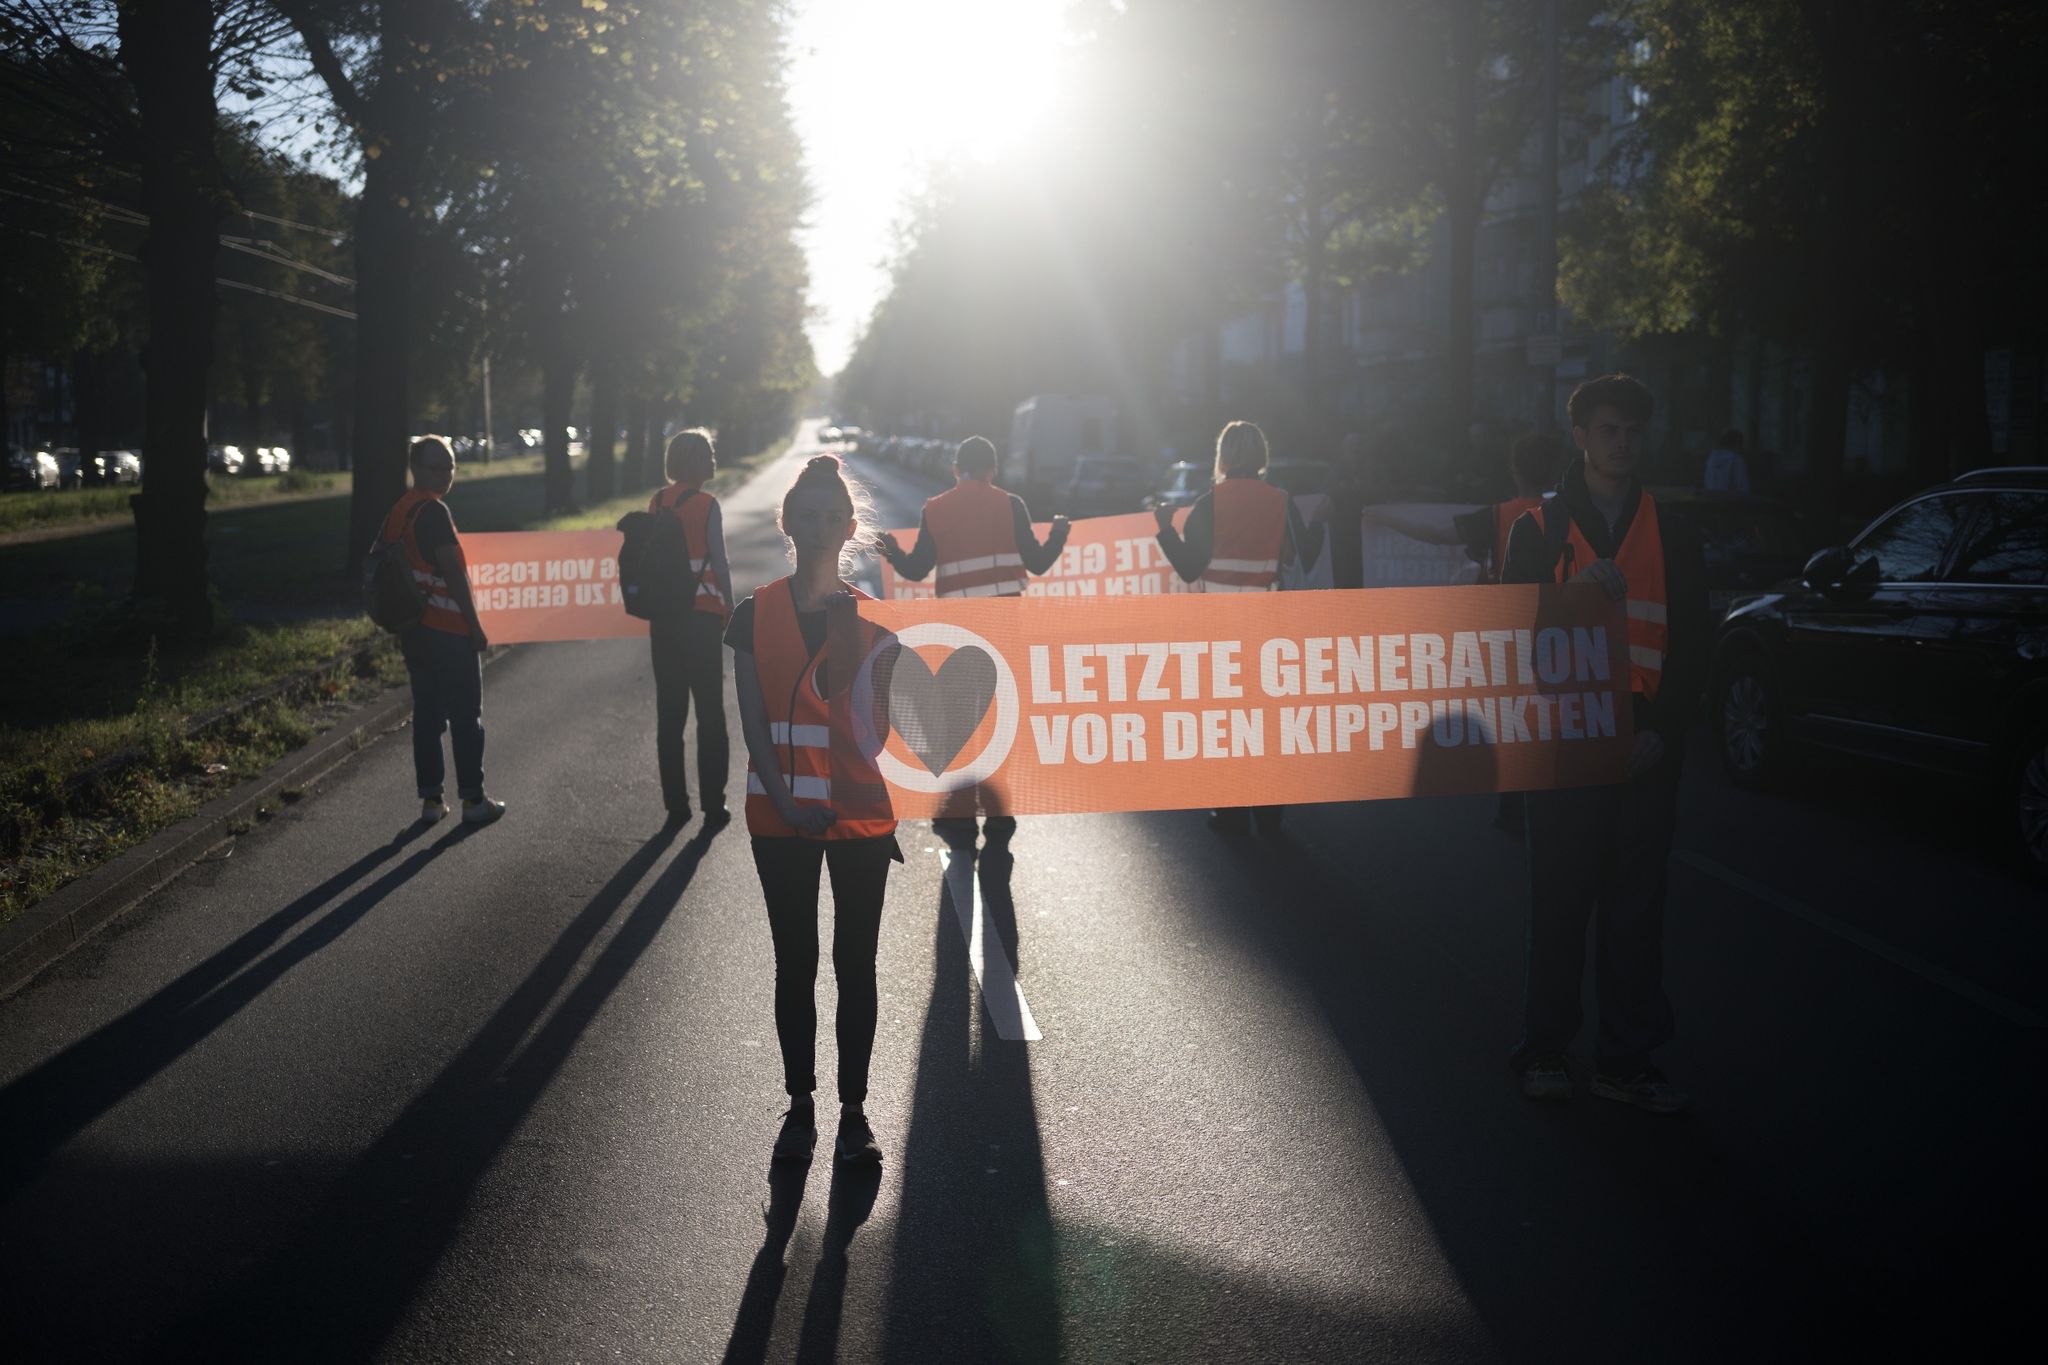 Trotz des angekündigten Verbots von Protestaktionen plant die Klimaschutzgruppe Letzte Generation eine Aktion beim Berlin-Marathon.